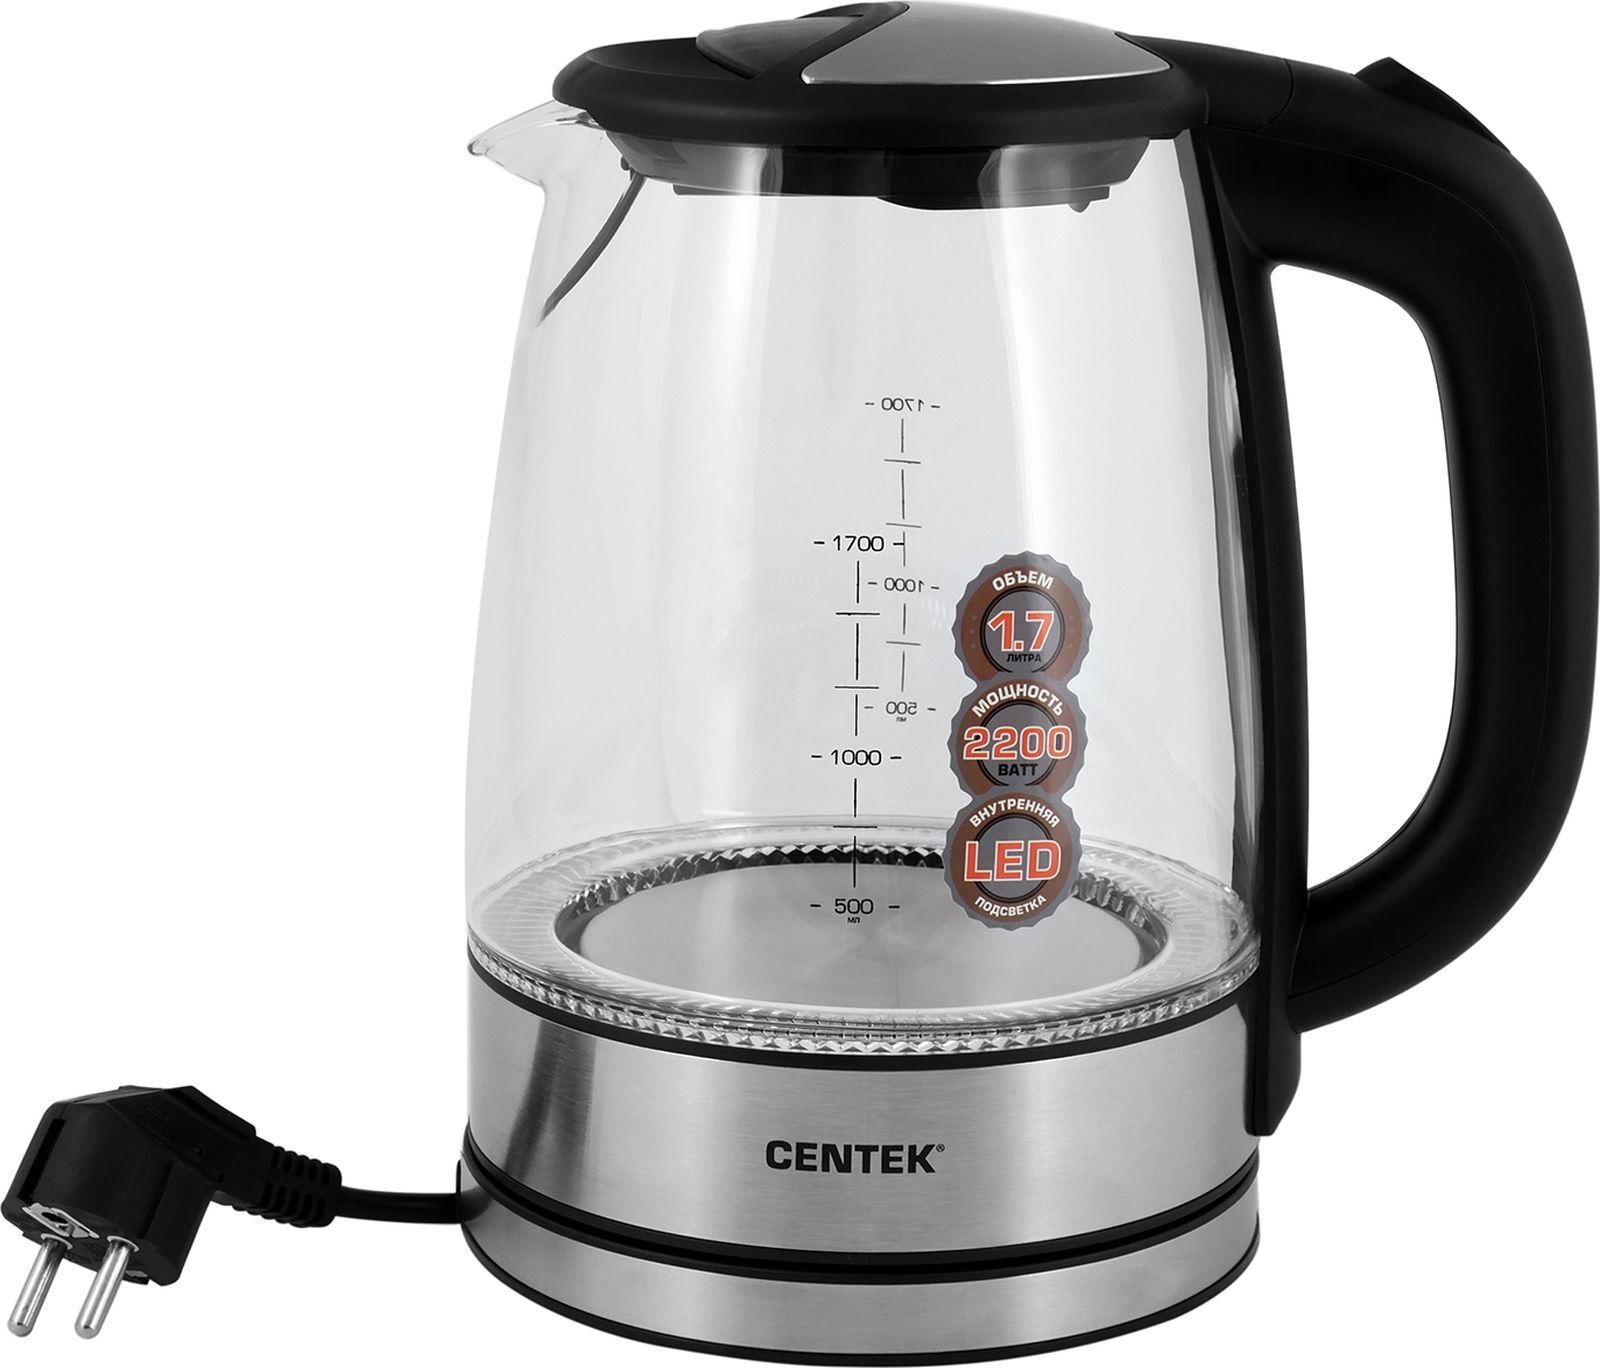 Чайник электрический CENTEK CT-1068 Purple - купить чайник электрический CT-1068 Purple по выгодной цене в интернет-магазине